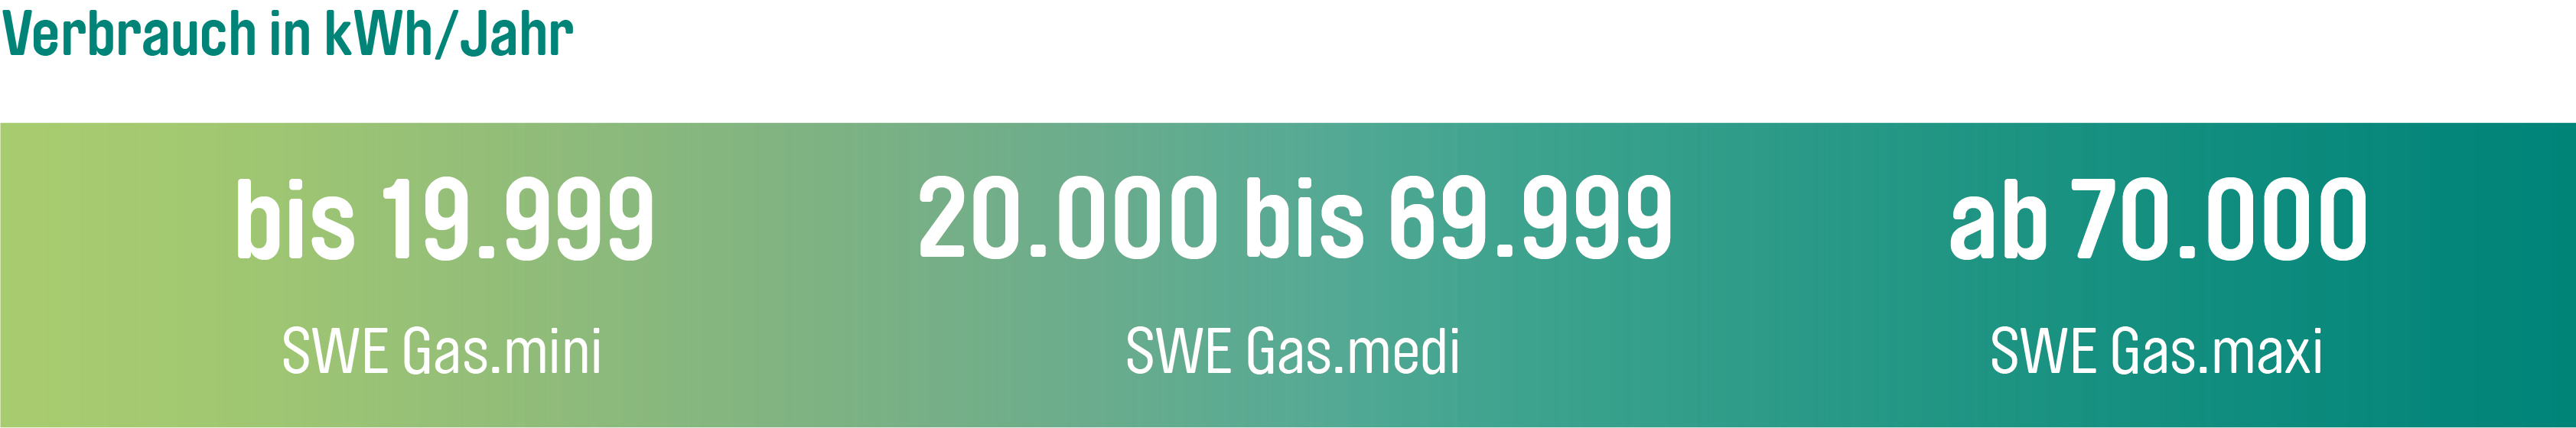 Bis 19.999 kWh erhält man den Tarif SWE Gas.mini, von 20.000 bis 69.999 kWh Gas.medi und ab 70.000 kWh den Tarif SWE Gas.maxi.